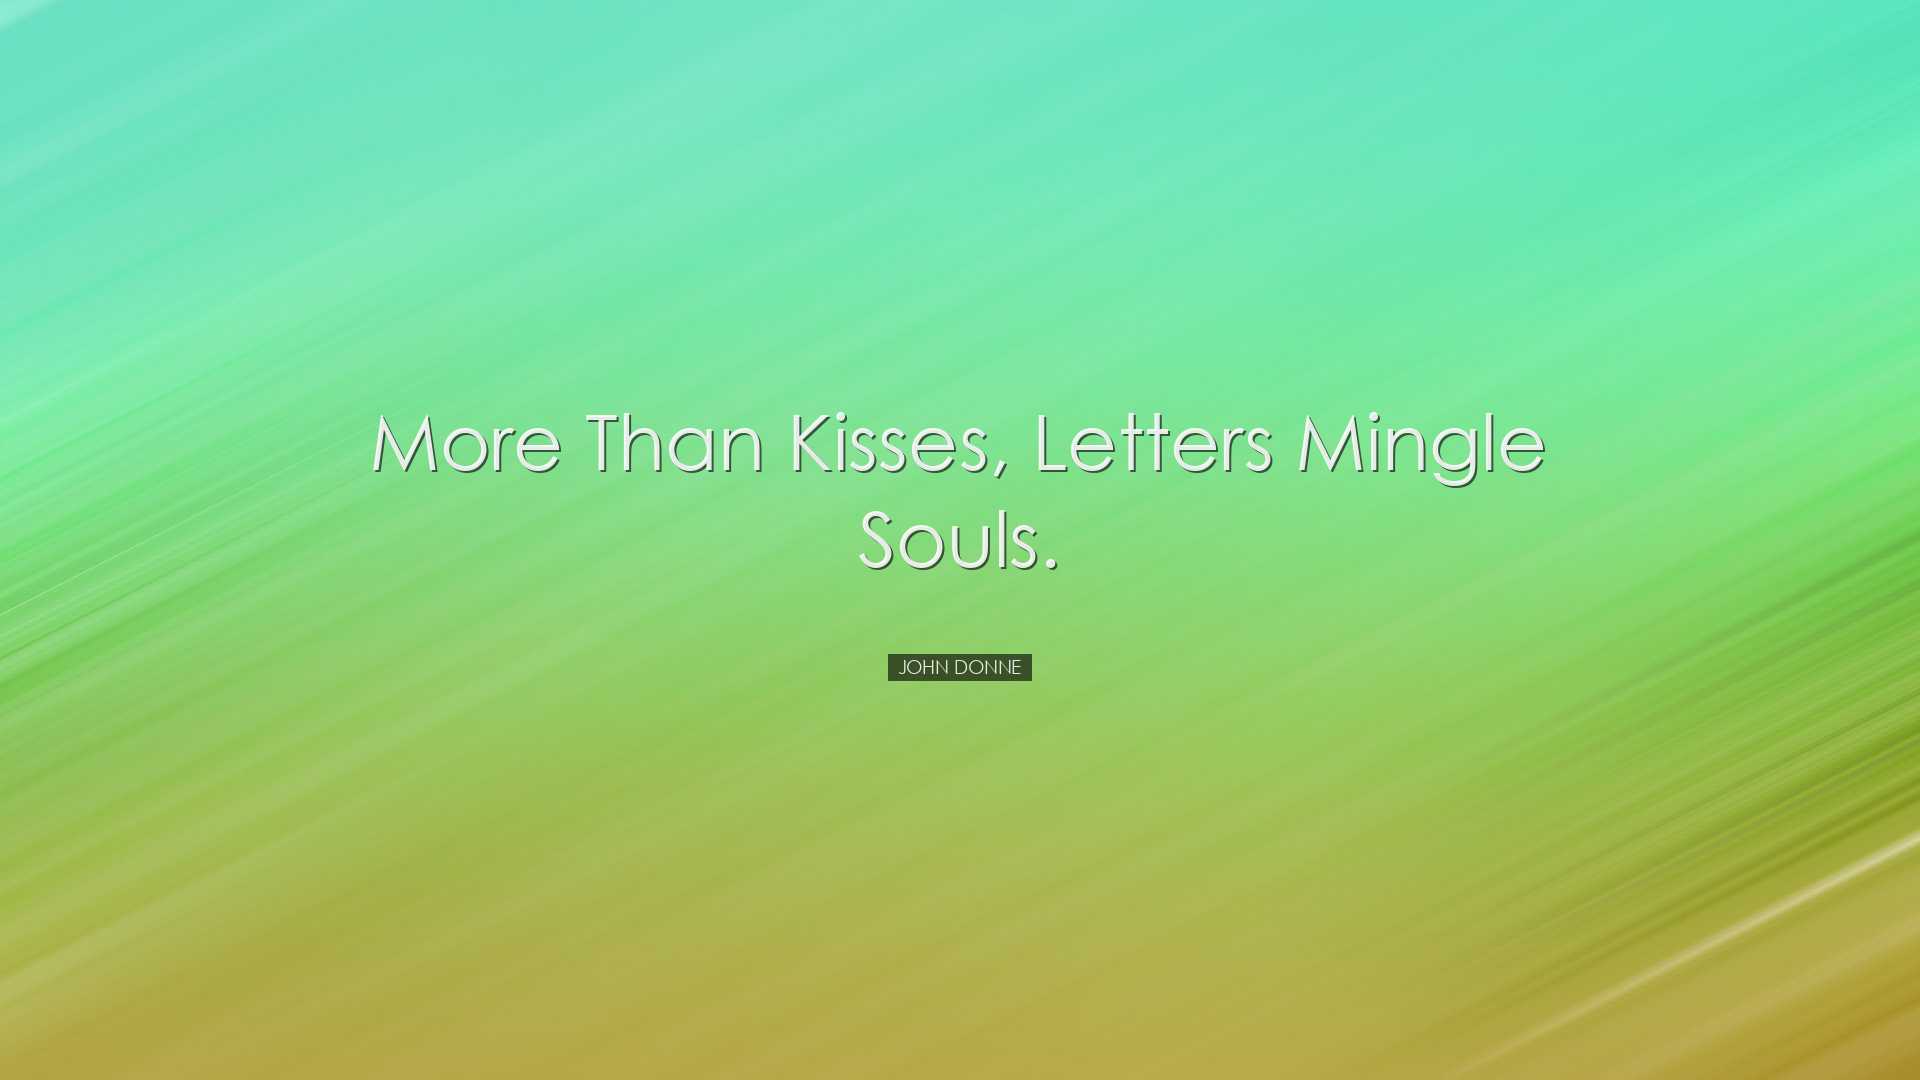 More than kisses, letters mingle souls. - John Donne